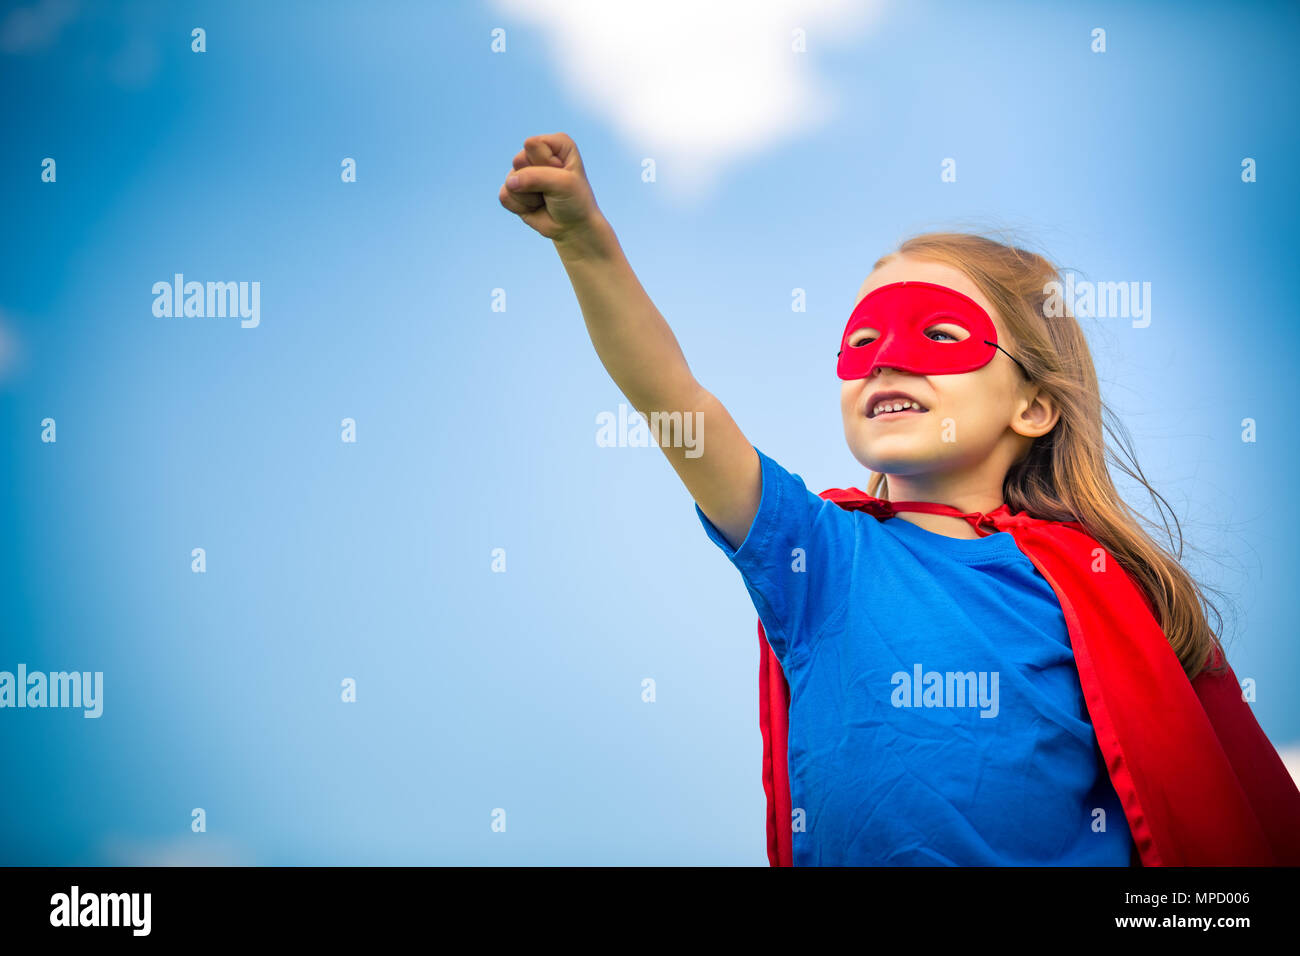 Lustiges kleines Mädchen macht super-Helden zu spielen. Stockfoto